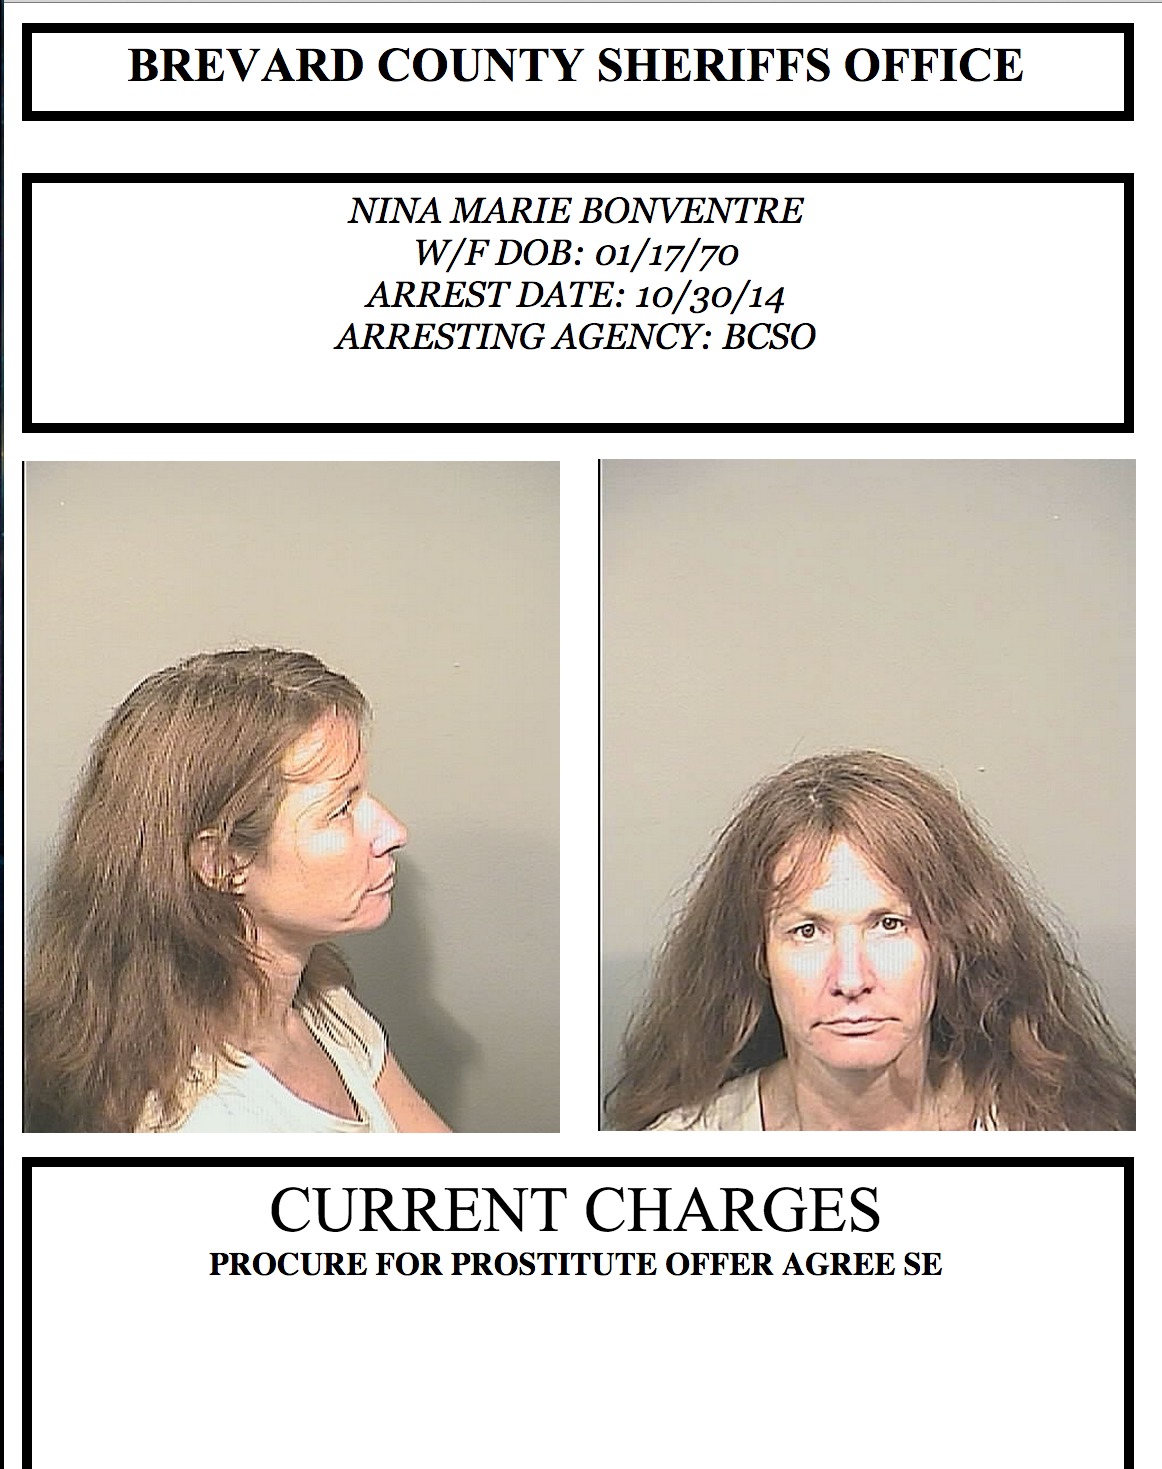 Arrests In Brevard County: Oct. 31, 20141162 x 1469